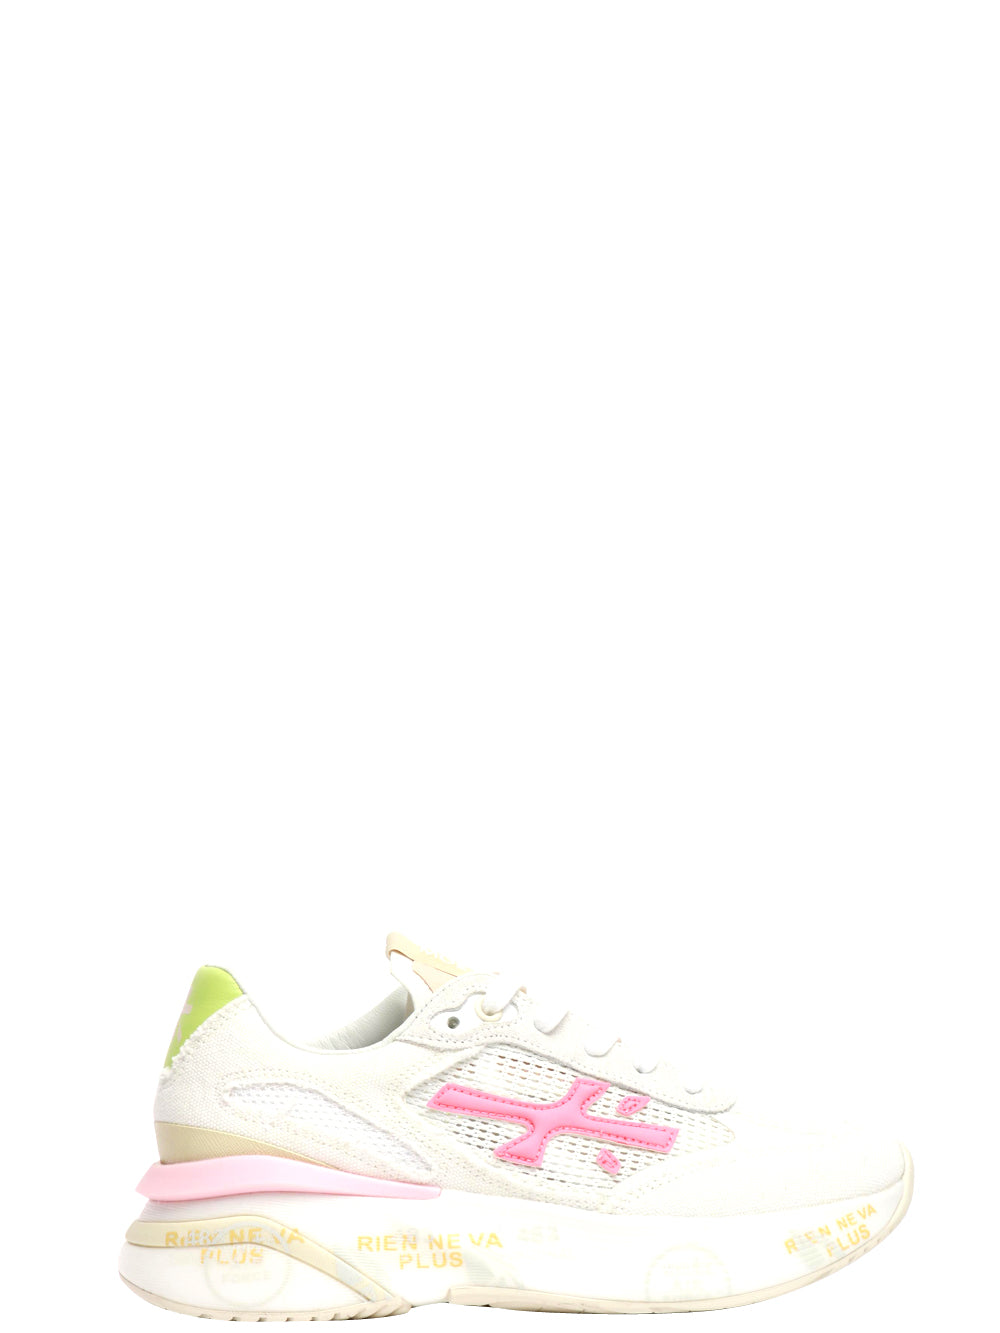 PREMIATA Scarpe Sneakers Moerund in Rete e Tessuto Bianche Bianco/verde/rosa